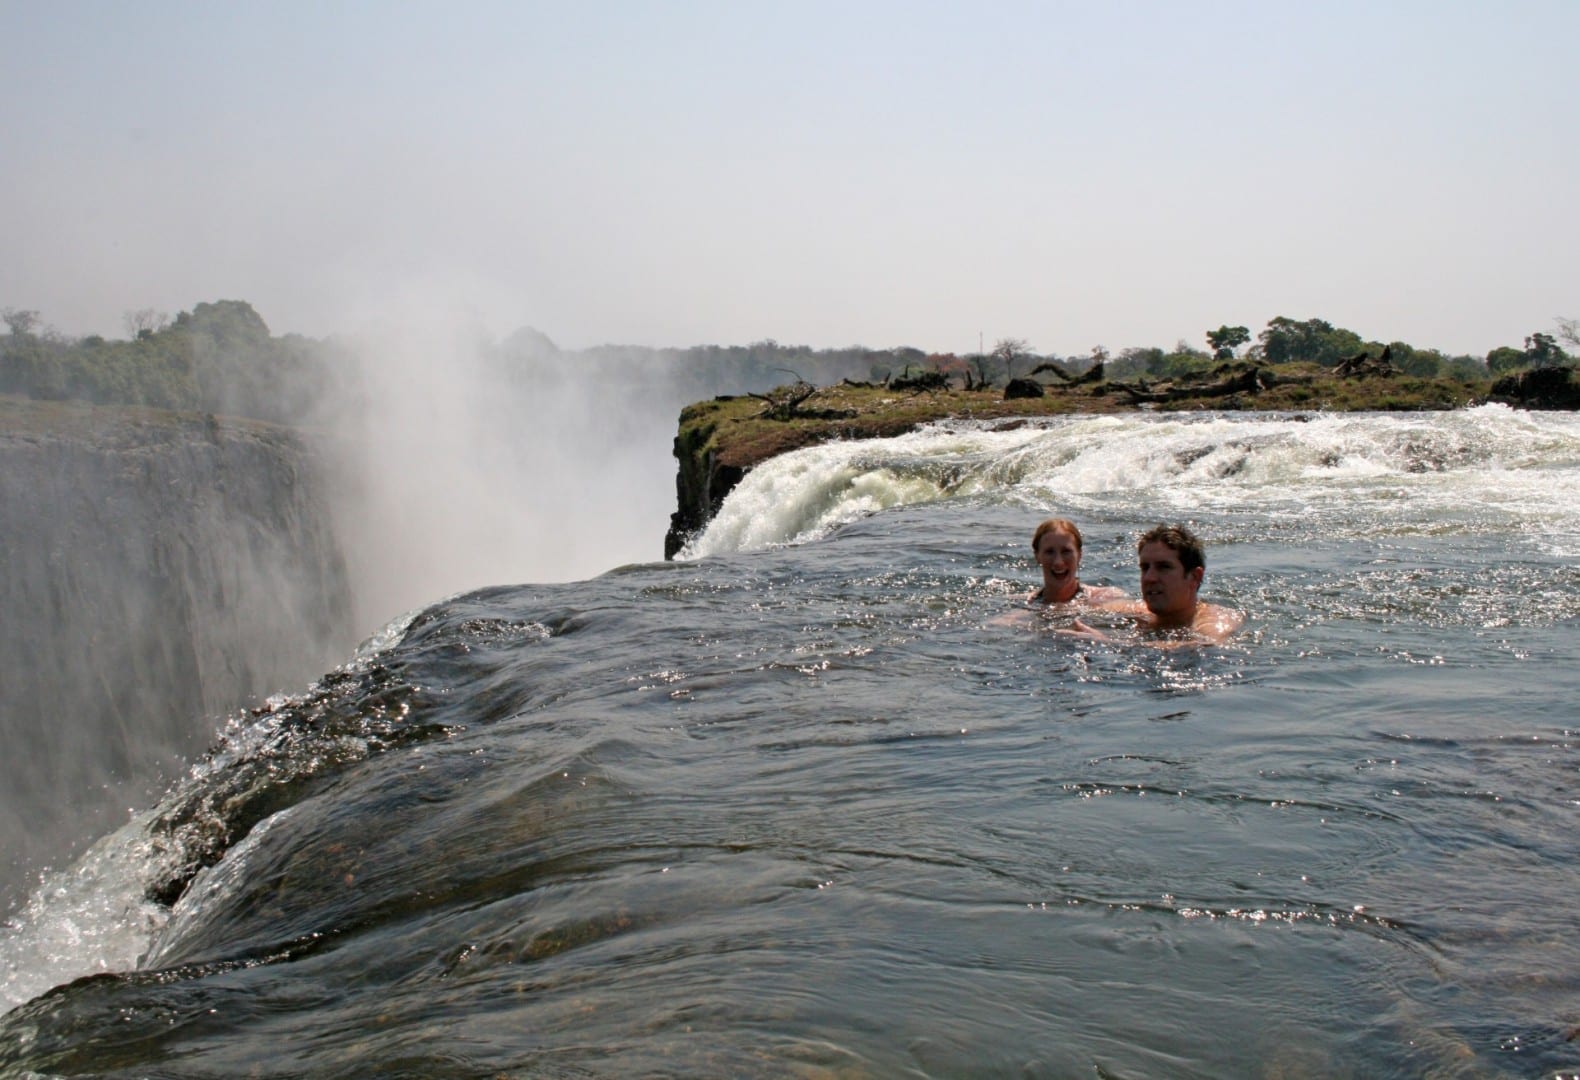 Increíblemente, es posible nadar con seguridad en piscinas naturales en la parte superior de las cataratas, en el lado de Zambia. Victoria Falls Zimbabue